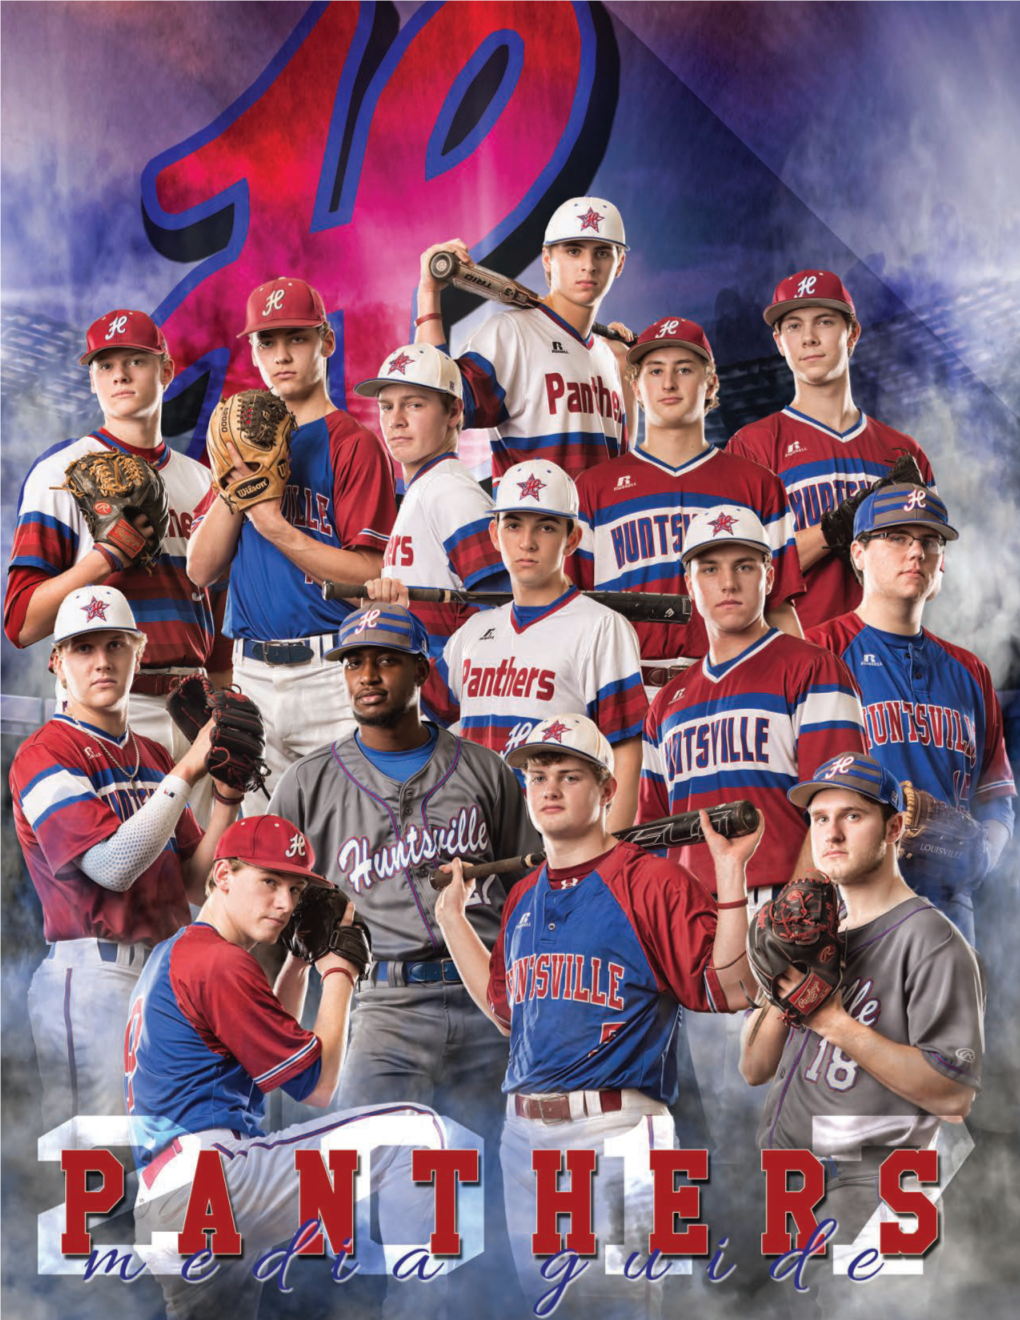 2017 Huntsville High Baseball Media Guide